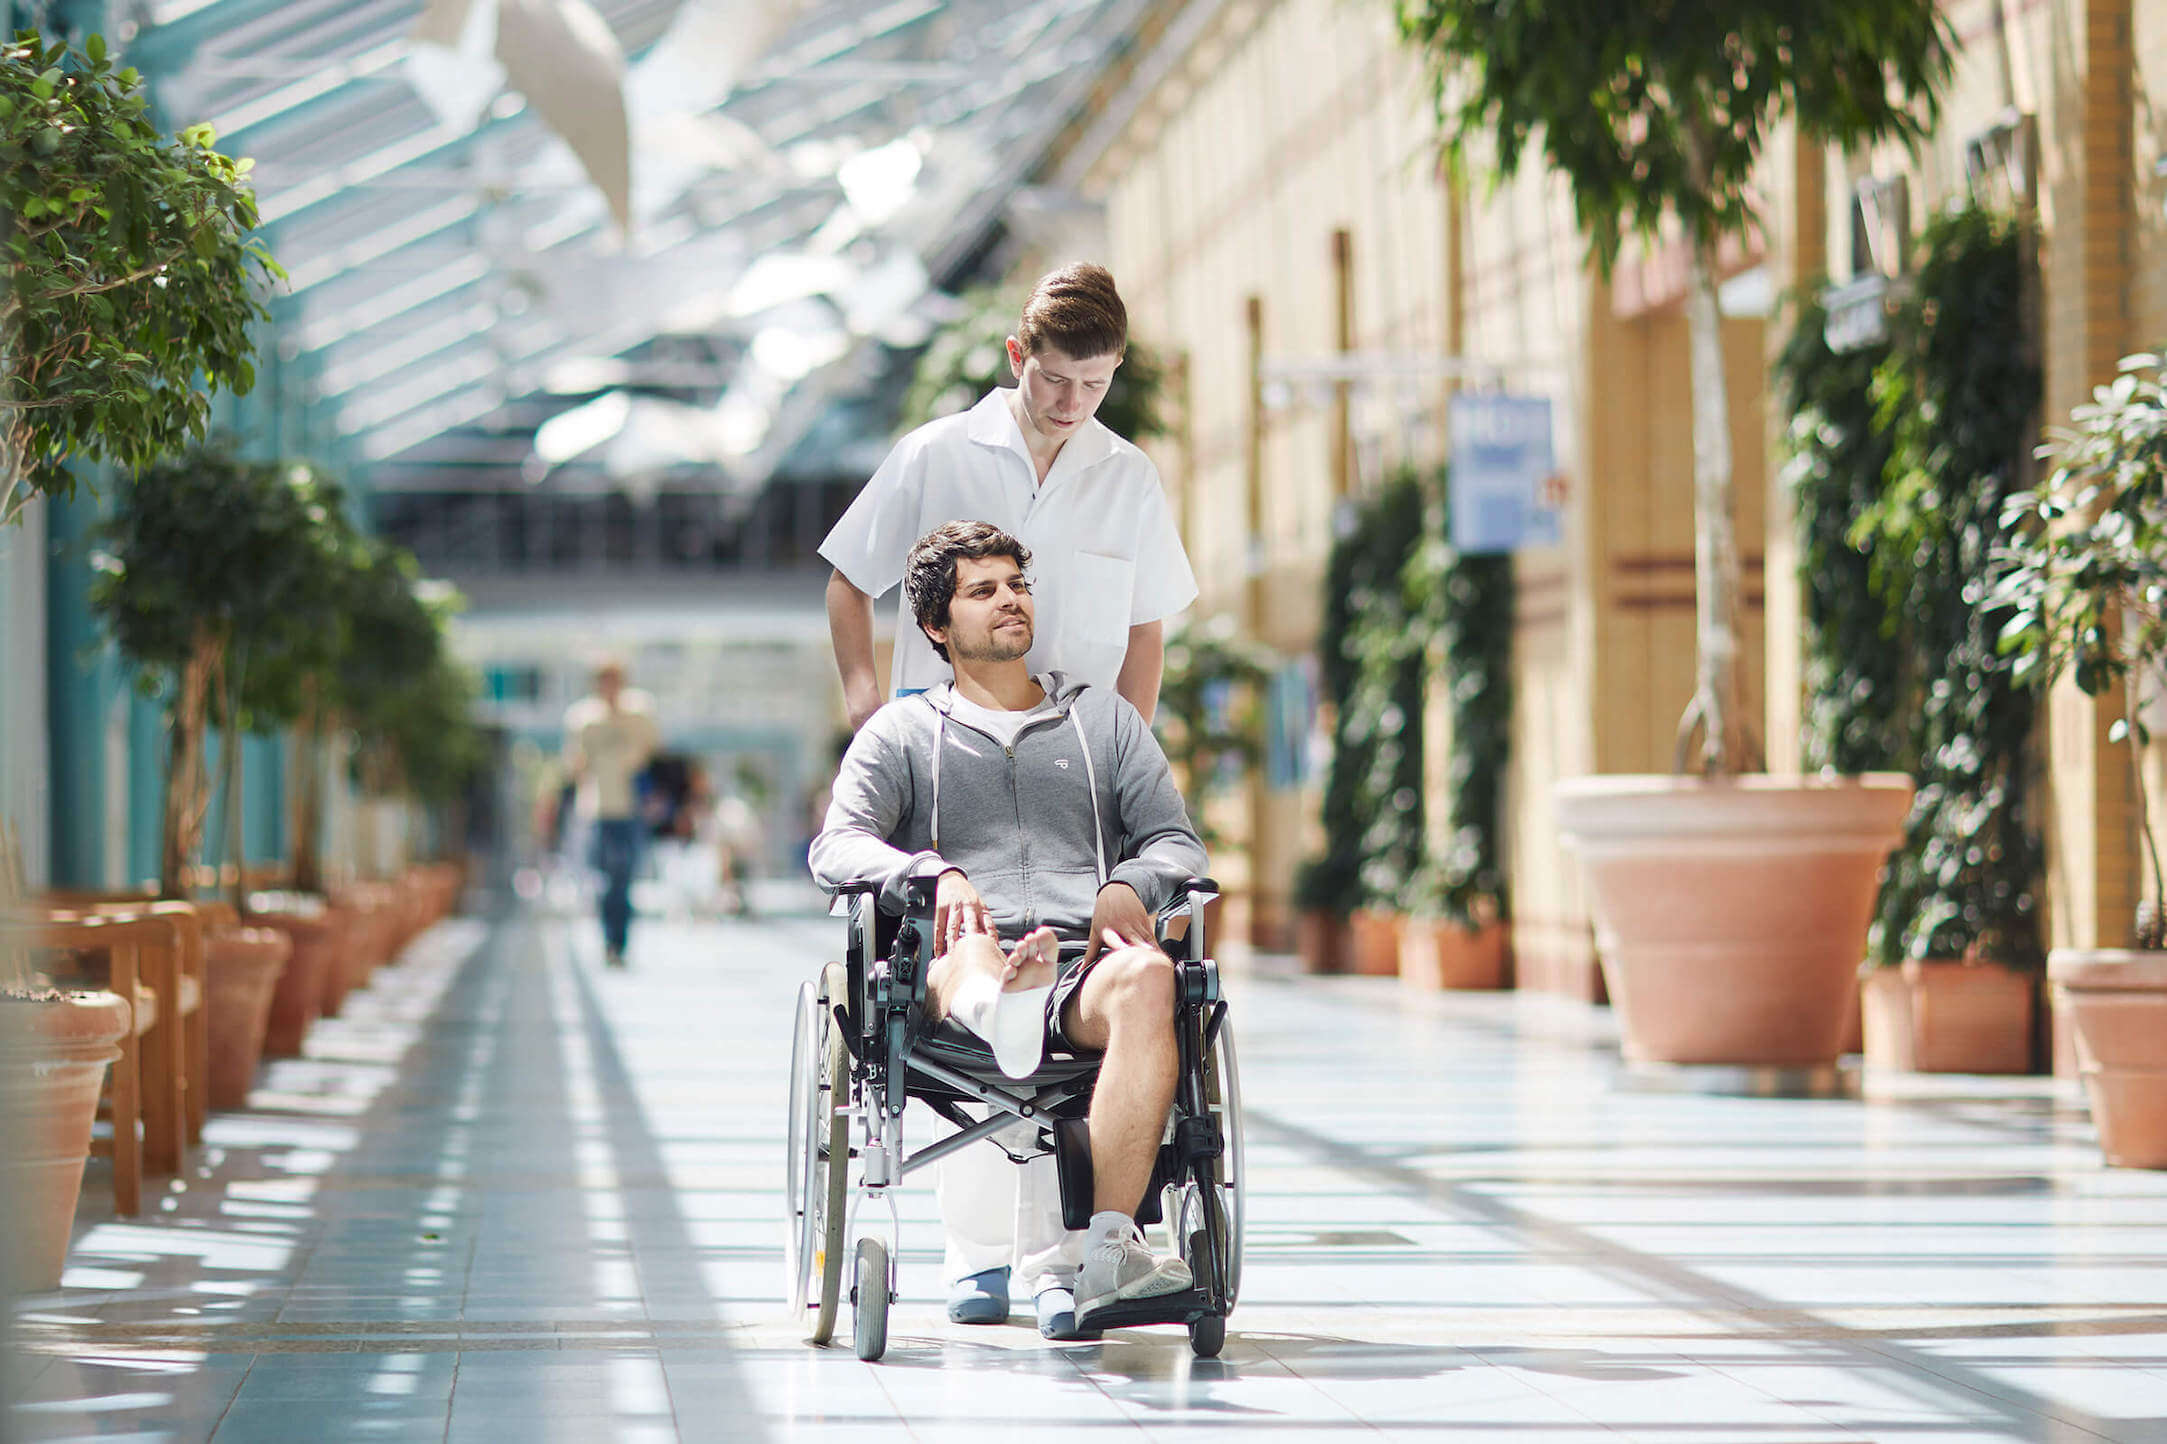 Ein Pfleger schiebt einen Patienten mit Gips am Bein im Rollstuhl